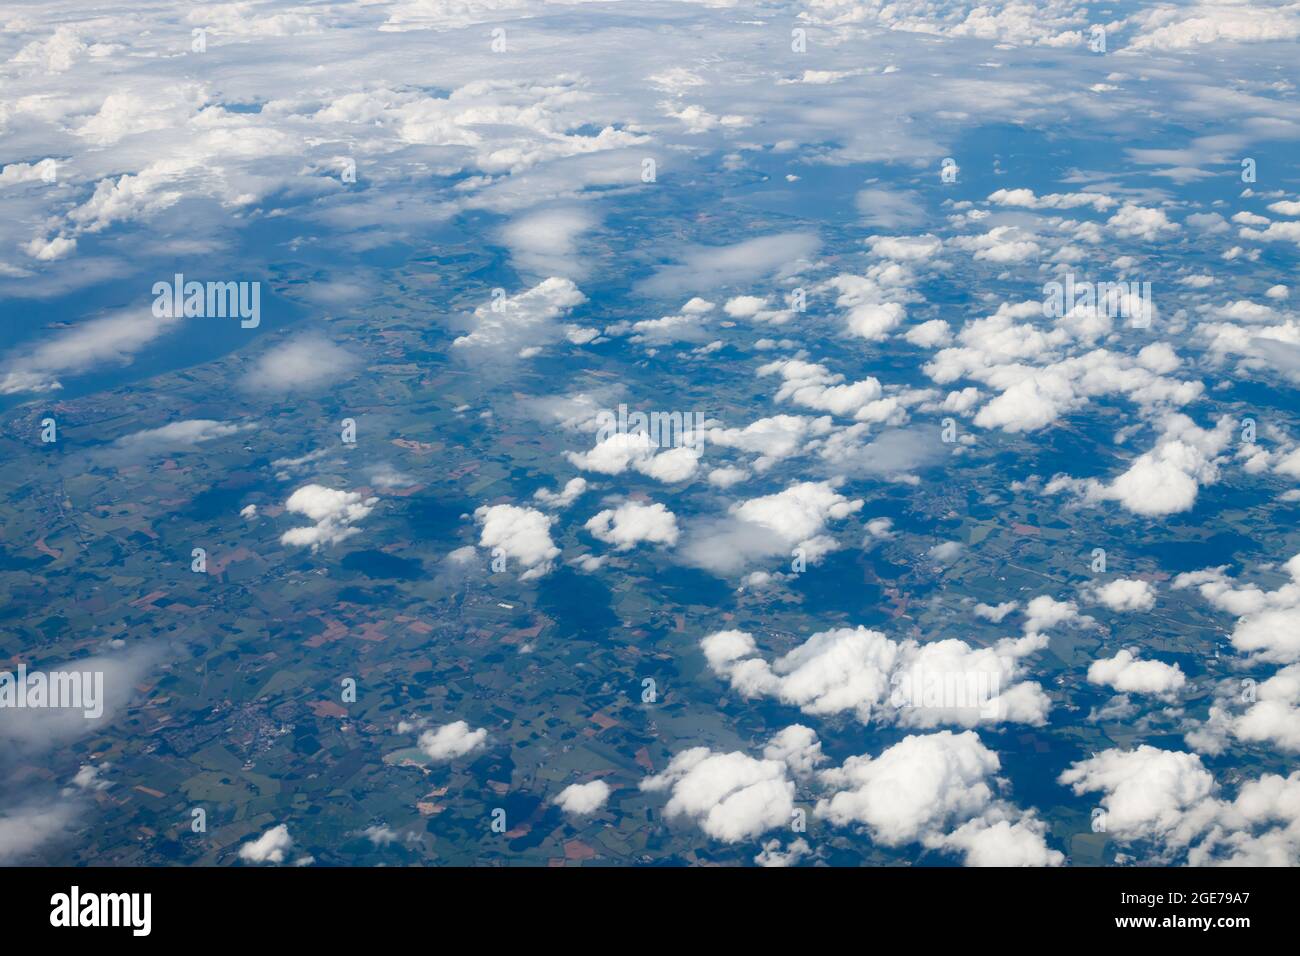 Vista aerea dall'aereo. Volo da Helsinki ad Amsterdam. Foto Stock